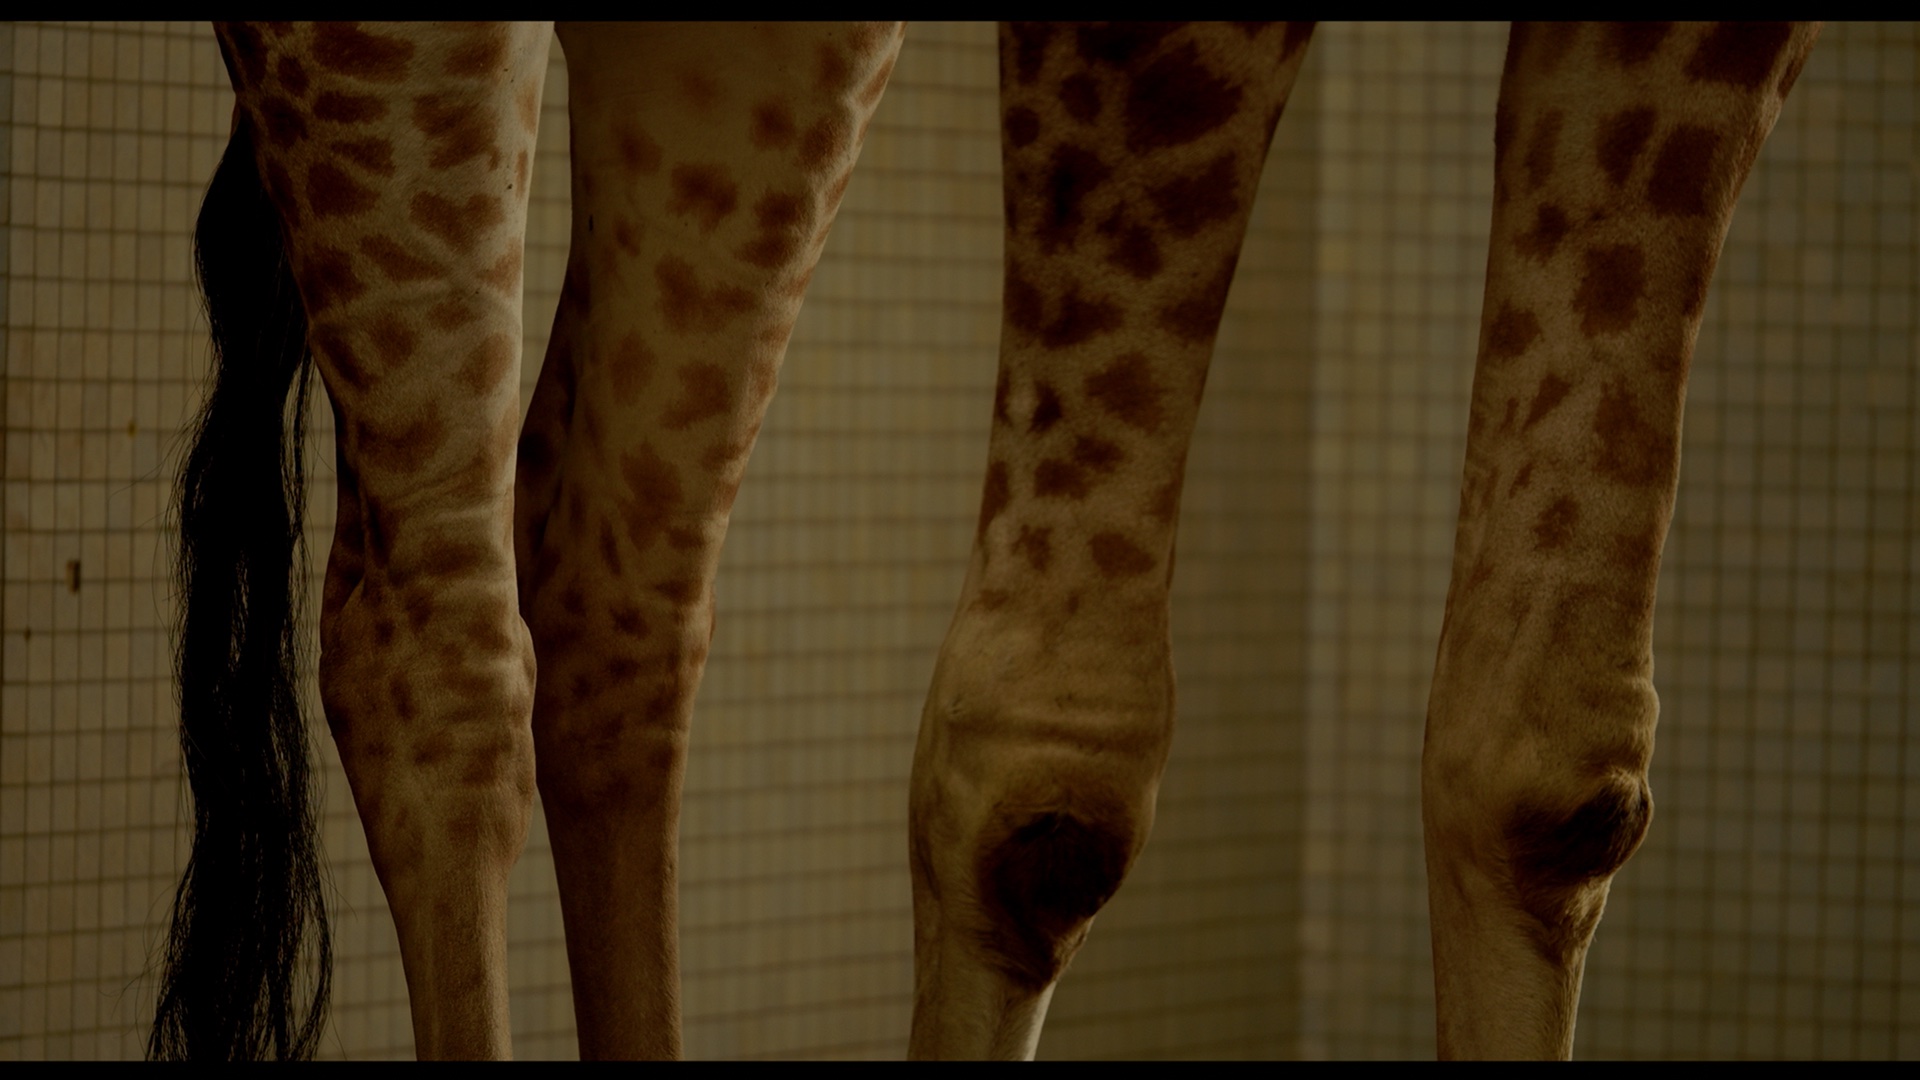 Poised giraffe legs loom in the frame